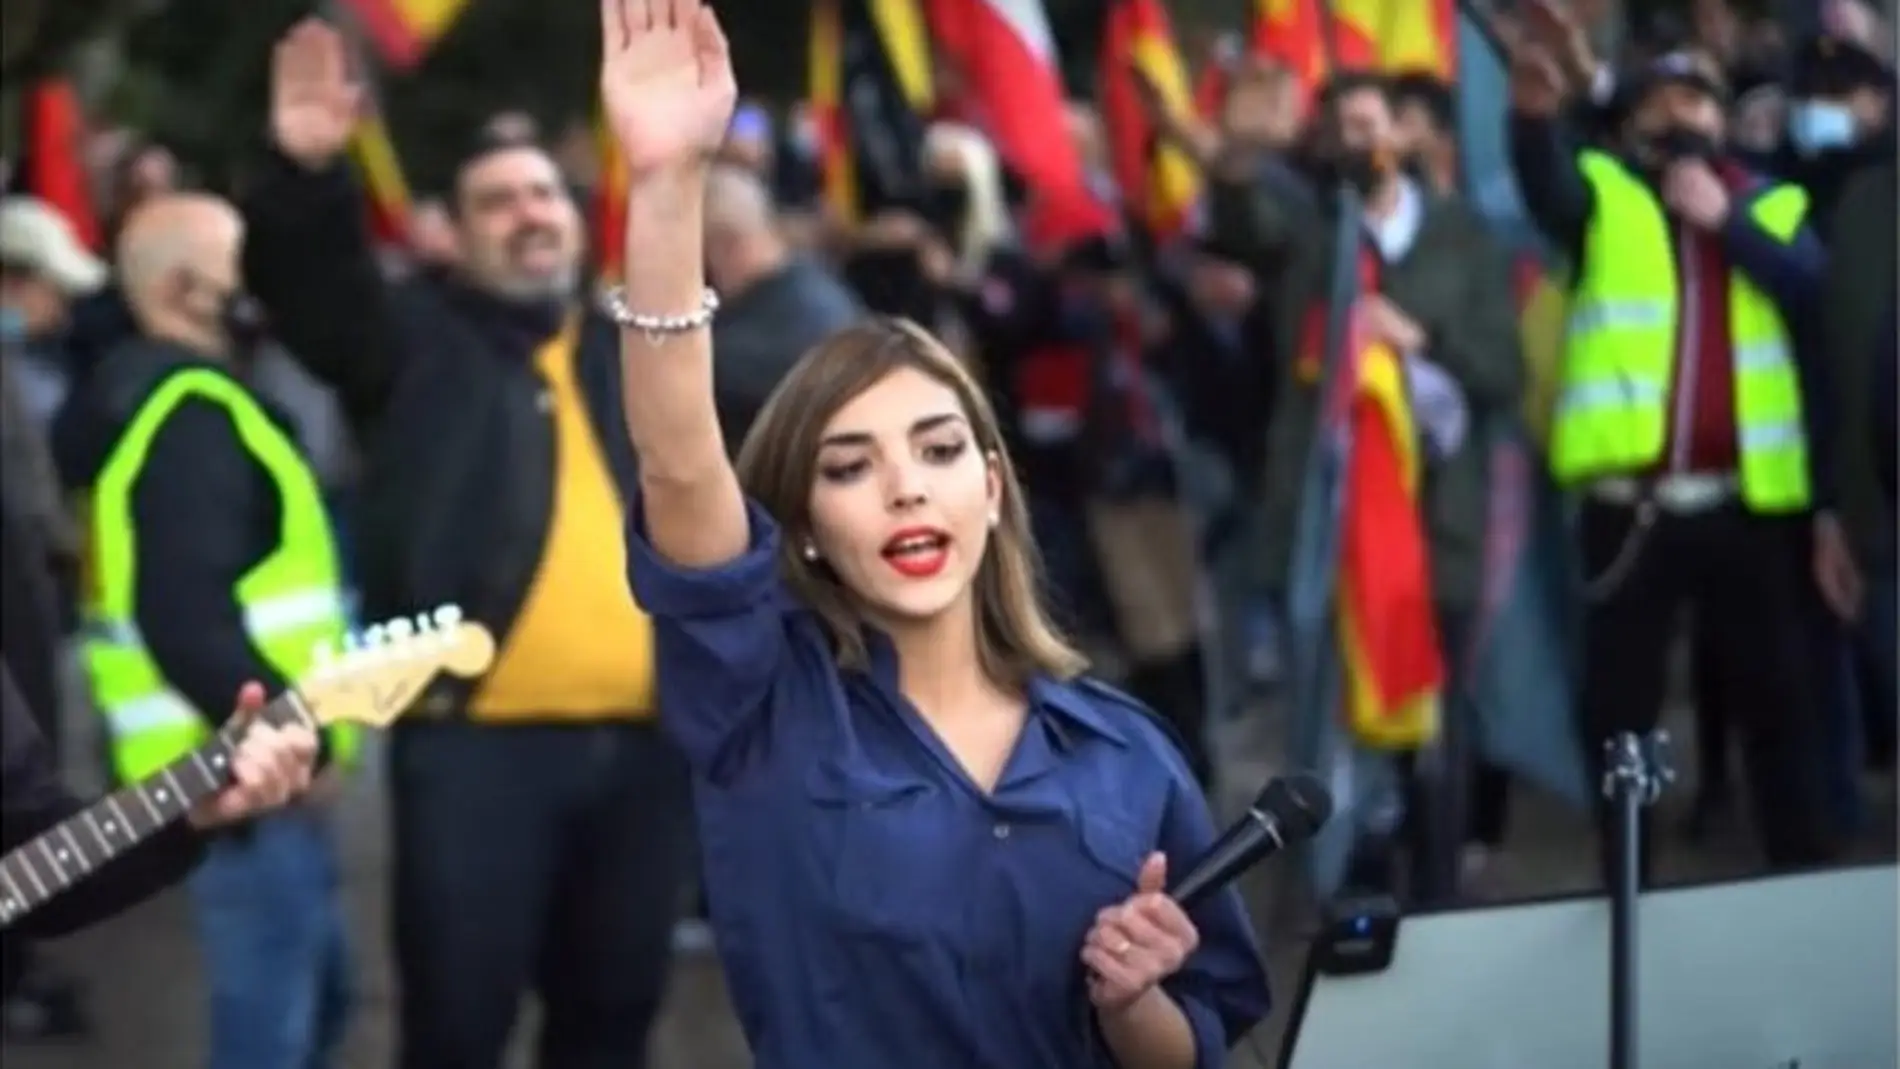 Isabel Peralta, conocido rostro de la extrema derecha en España. / Efe